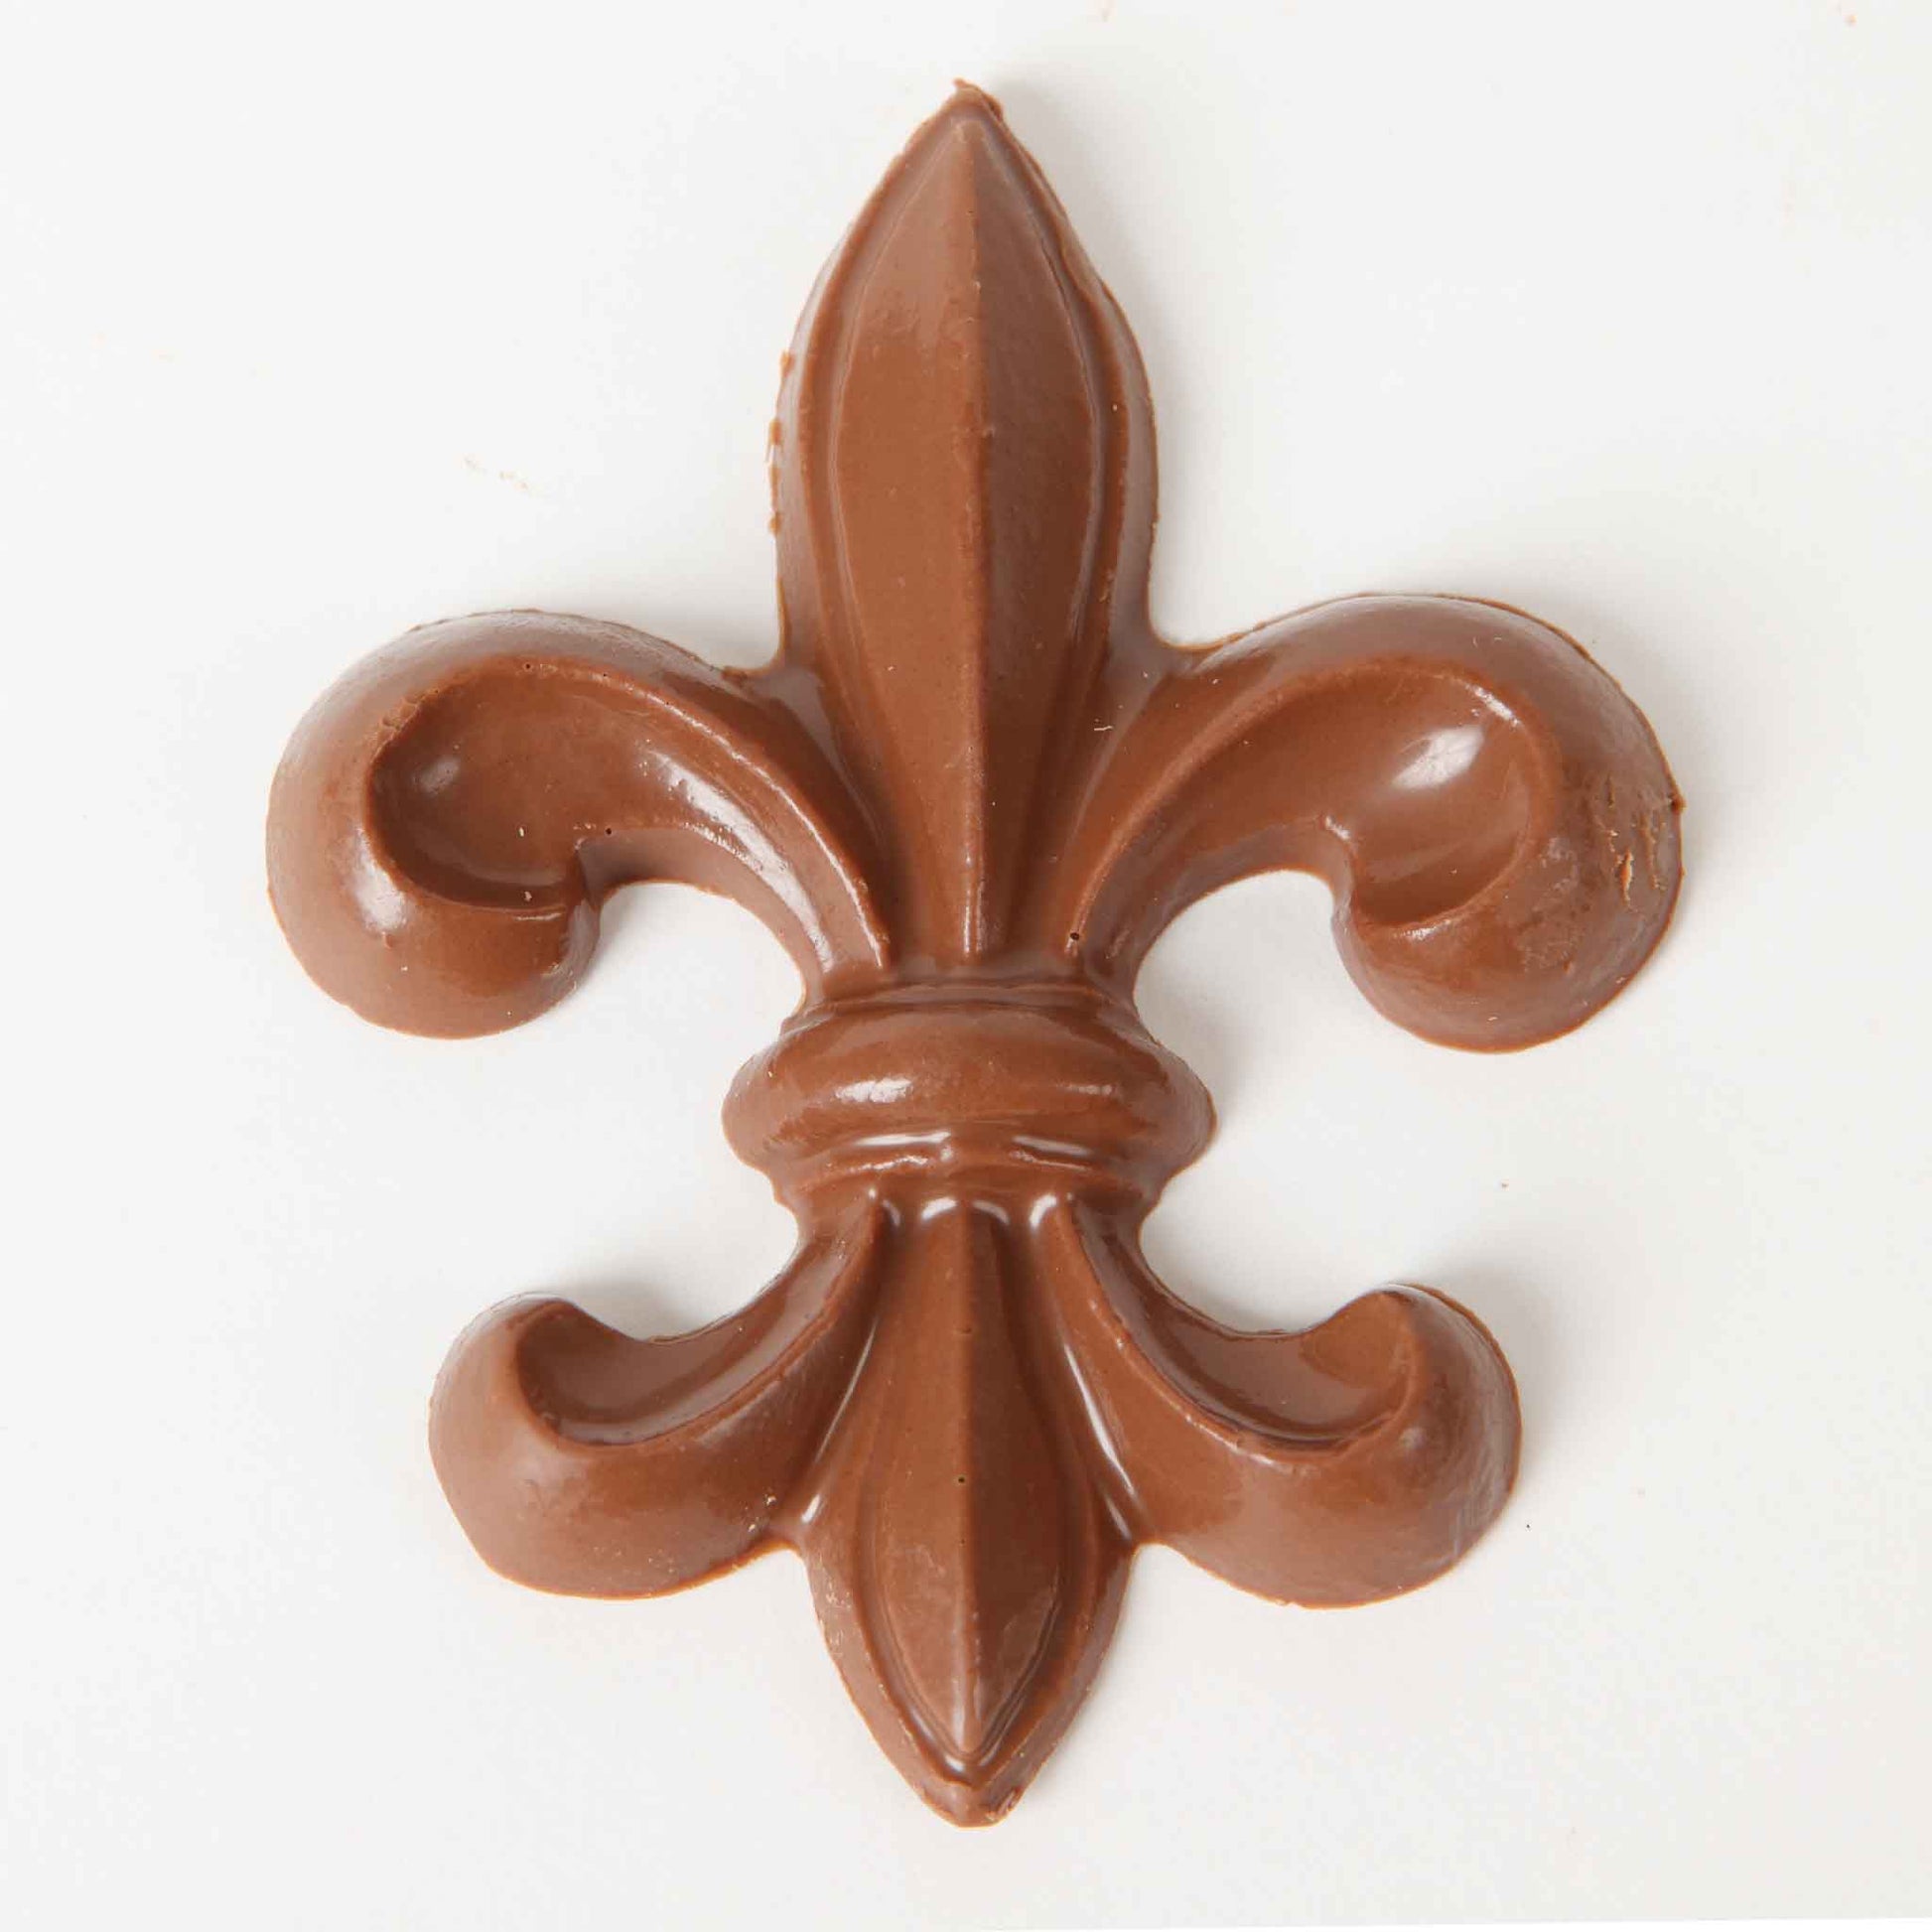 Muths Solid Chocolate Fleur de Lis Piece Closeup